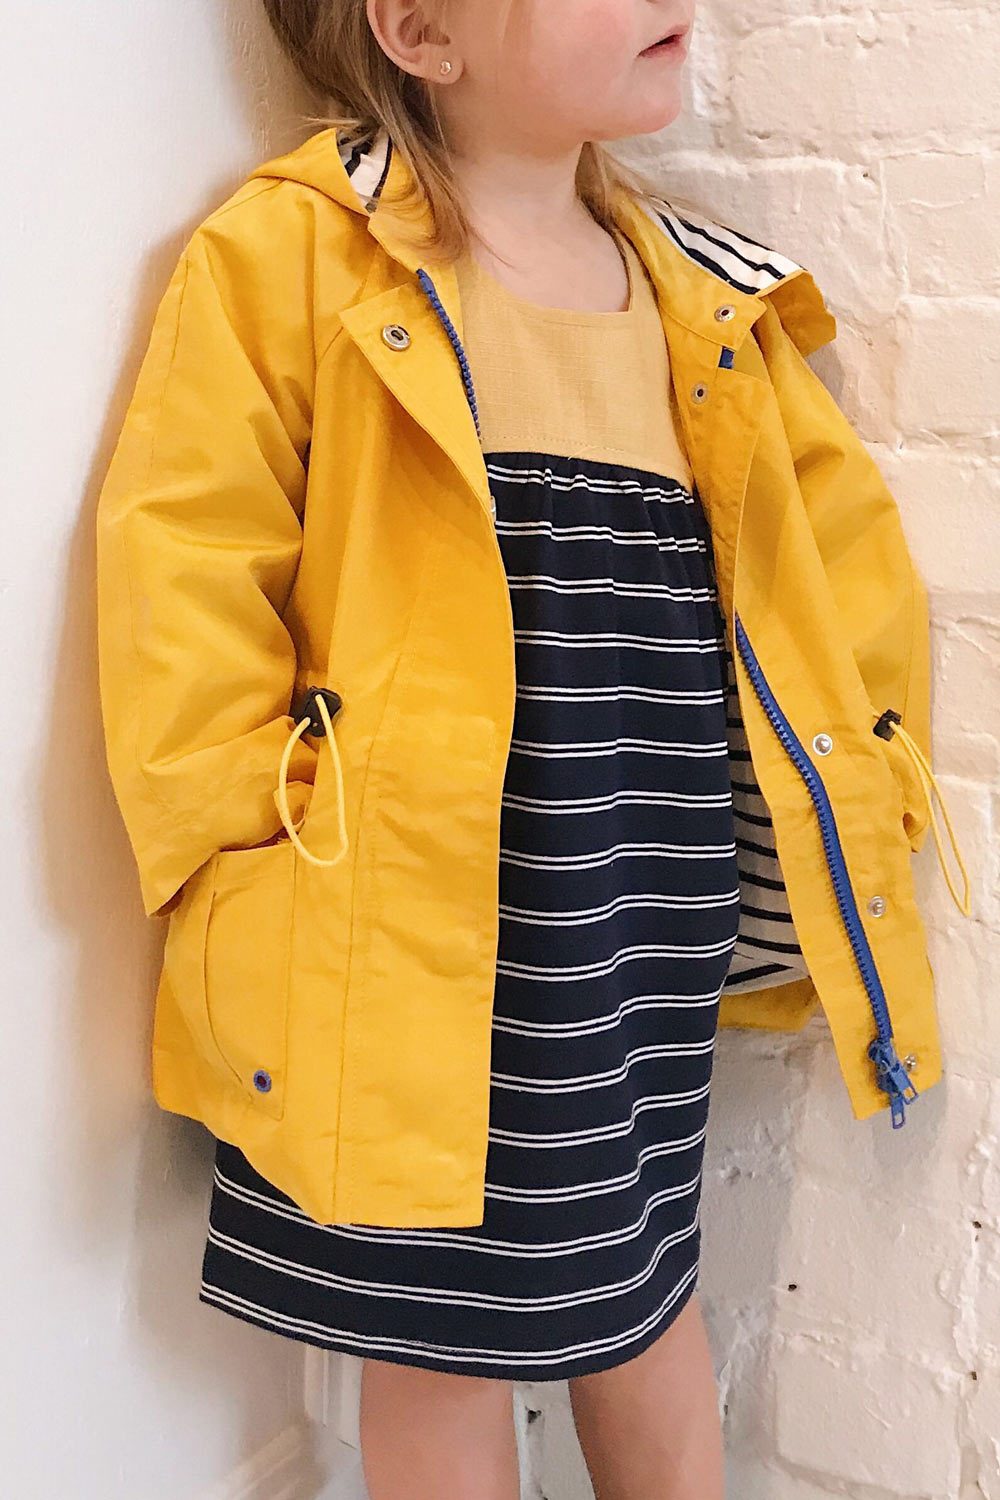 Noville Mini Yellow Kids Hooded Rain Jacket | La Petite Garçonne model close up